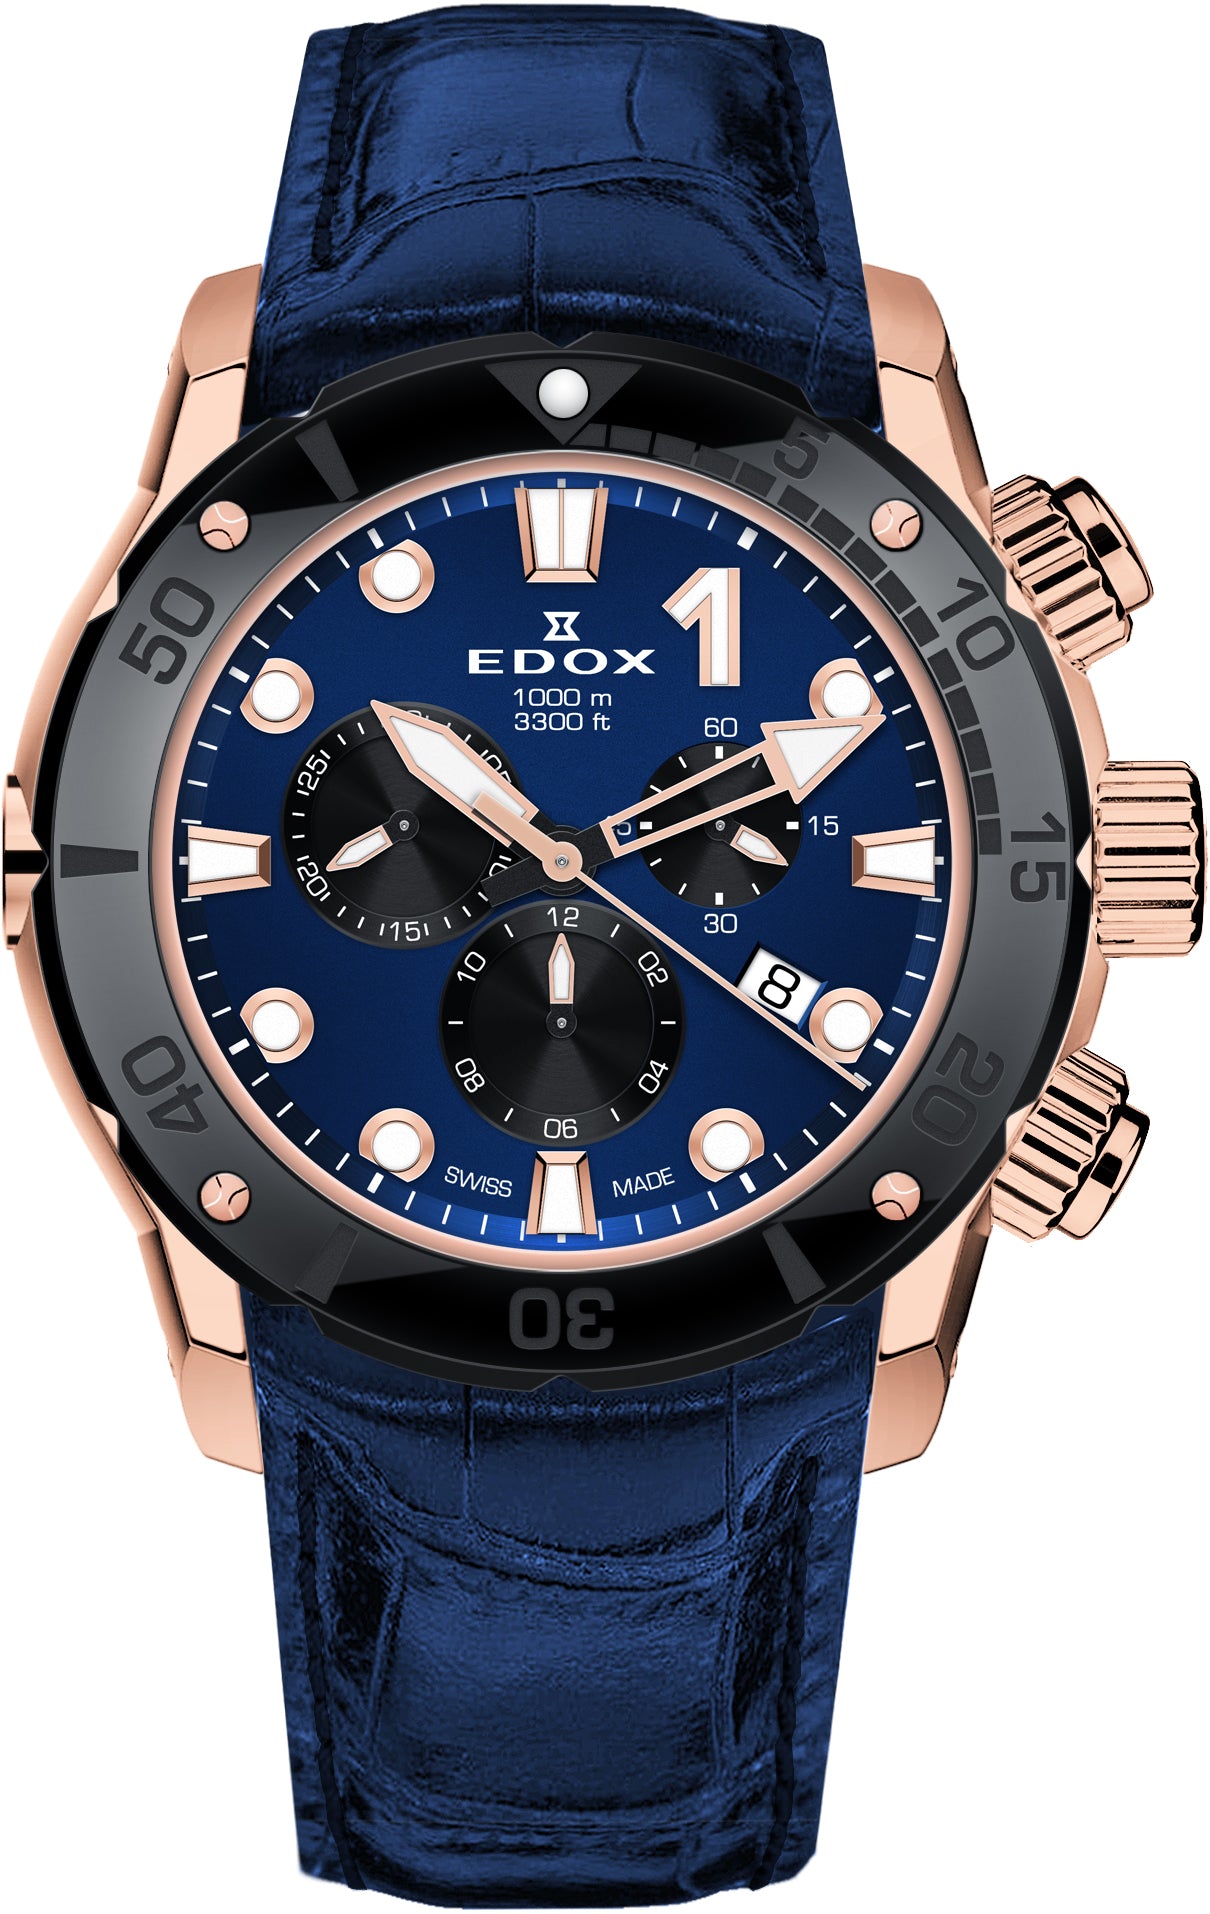 Photos - Wrist Watch EDOX Watch CO-1 Chrono Quartz EDX-013 